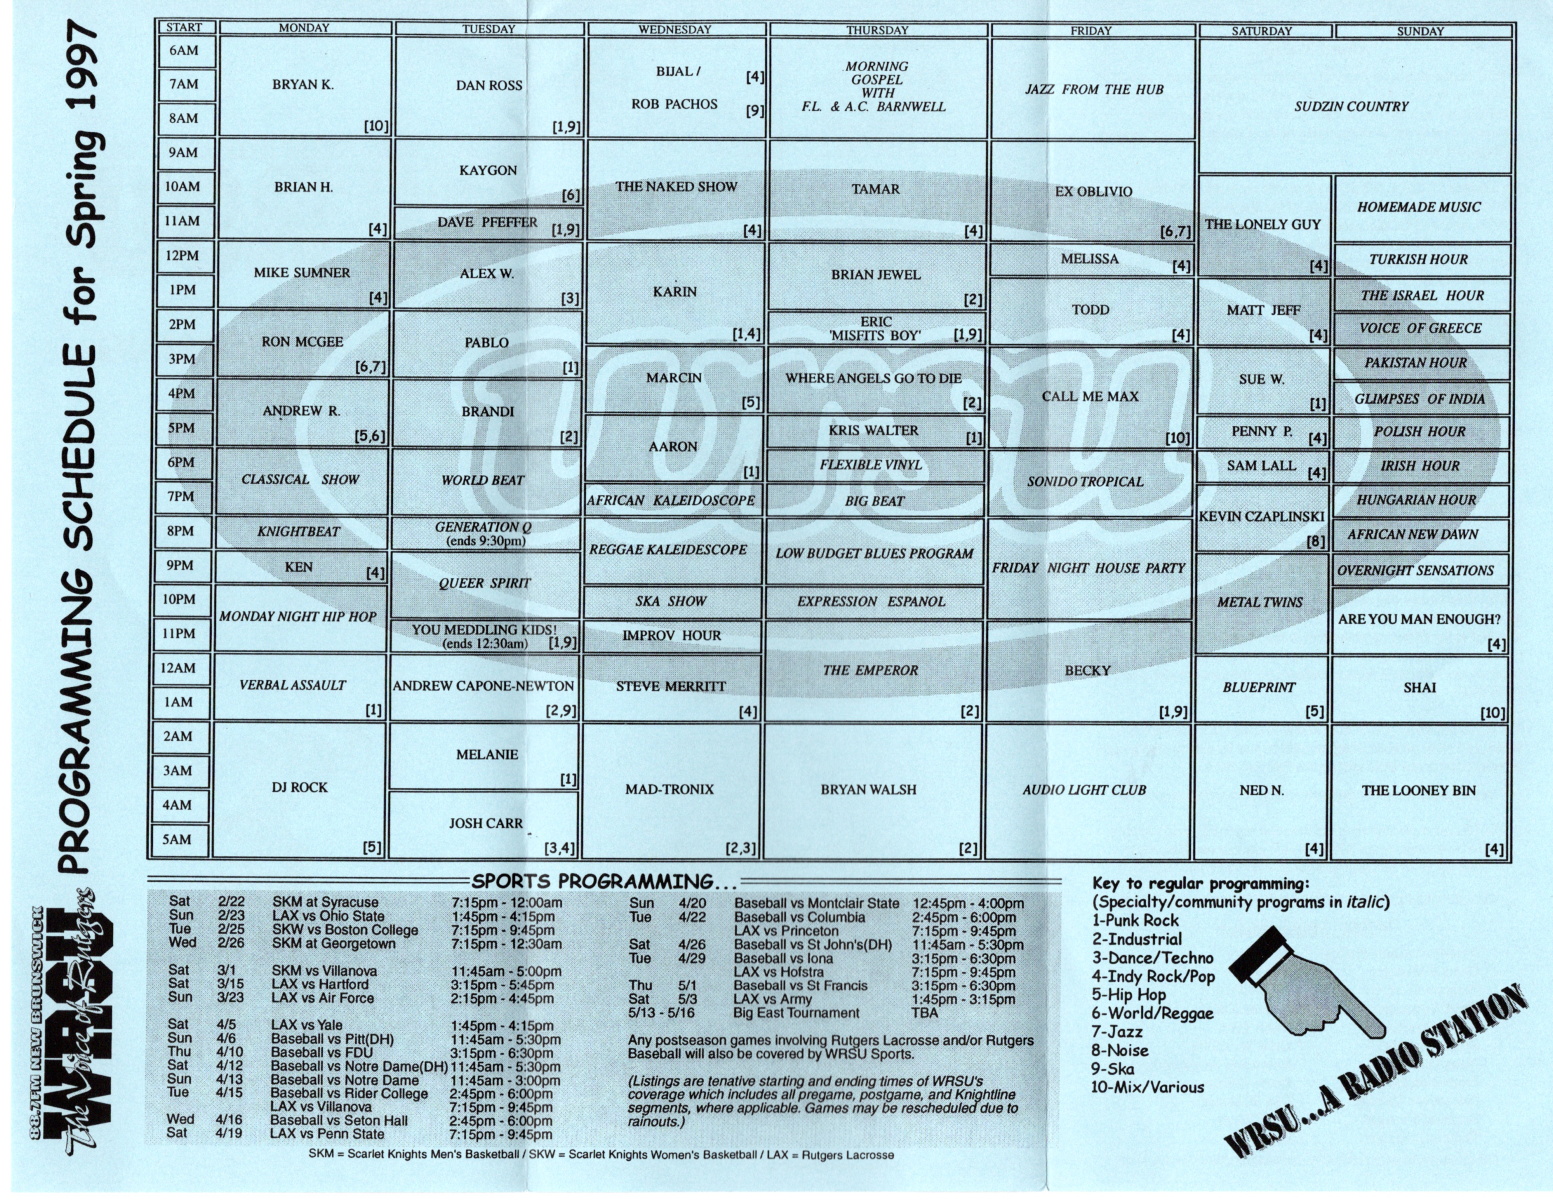 1997 Program Guide